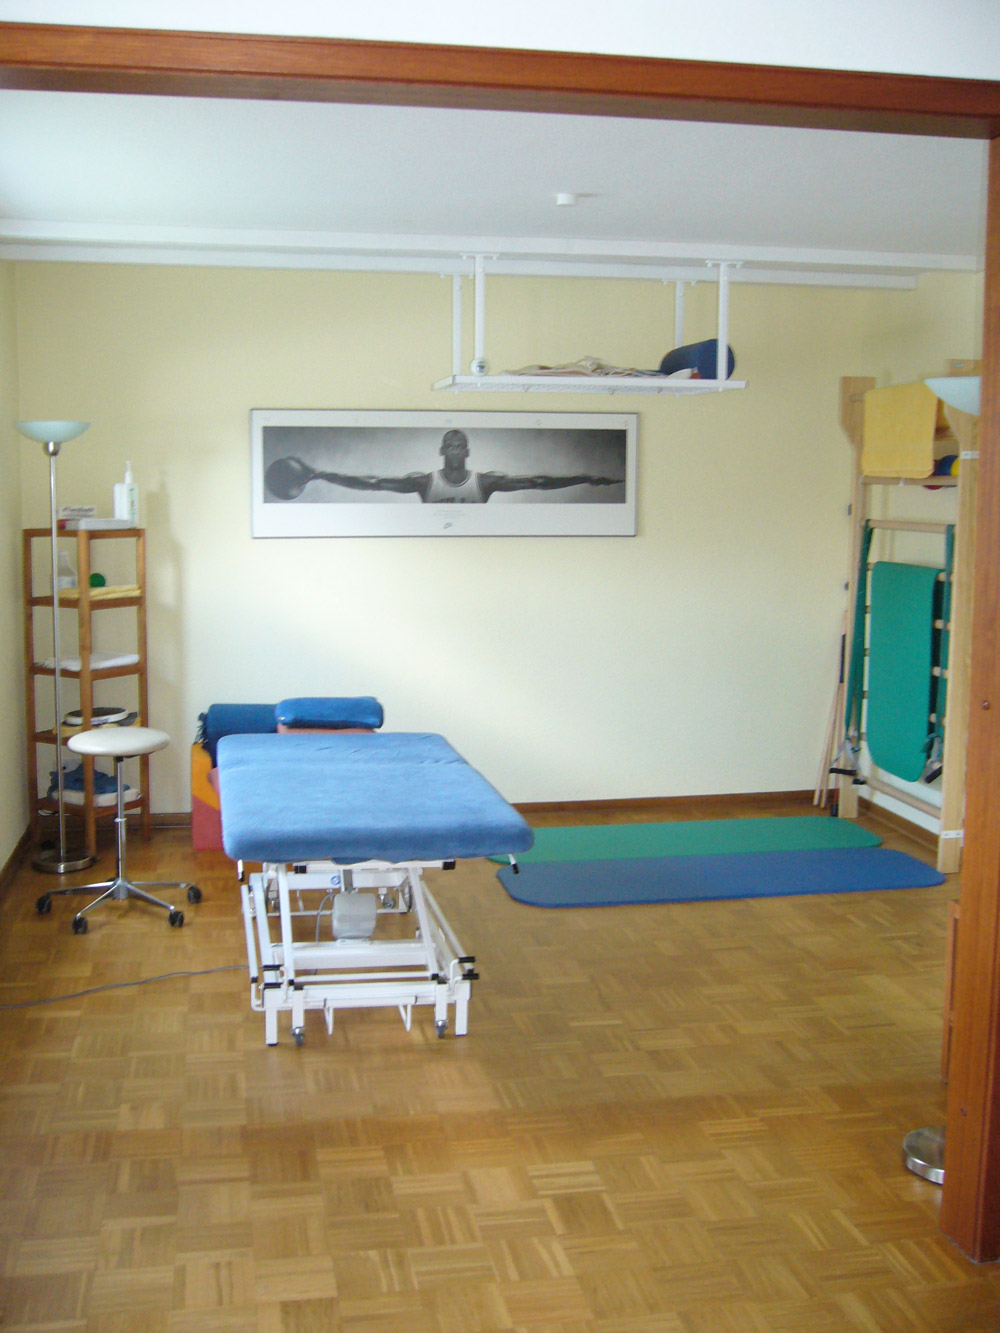 Der Behandlungsraum im Erdgeschoss